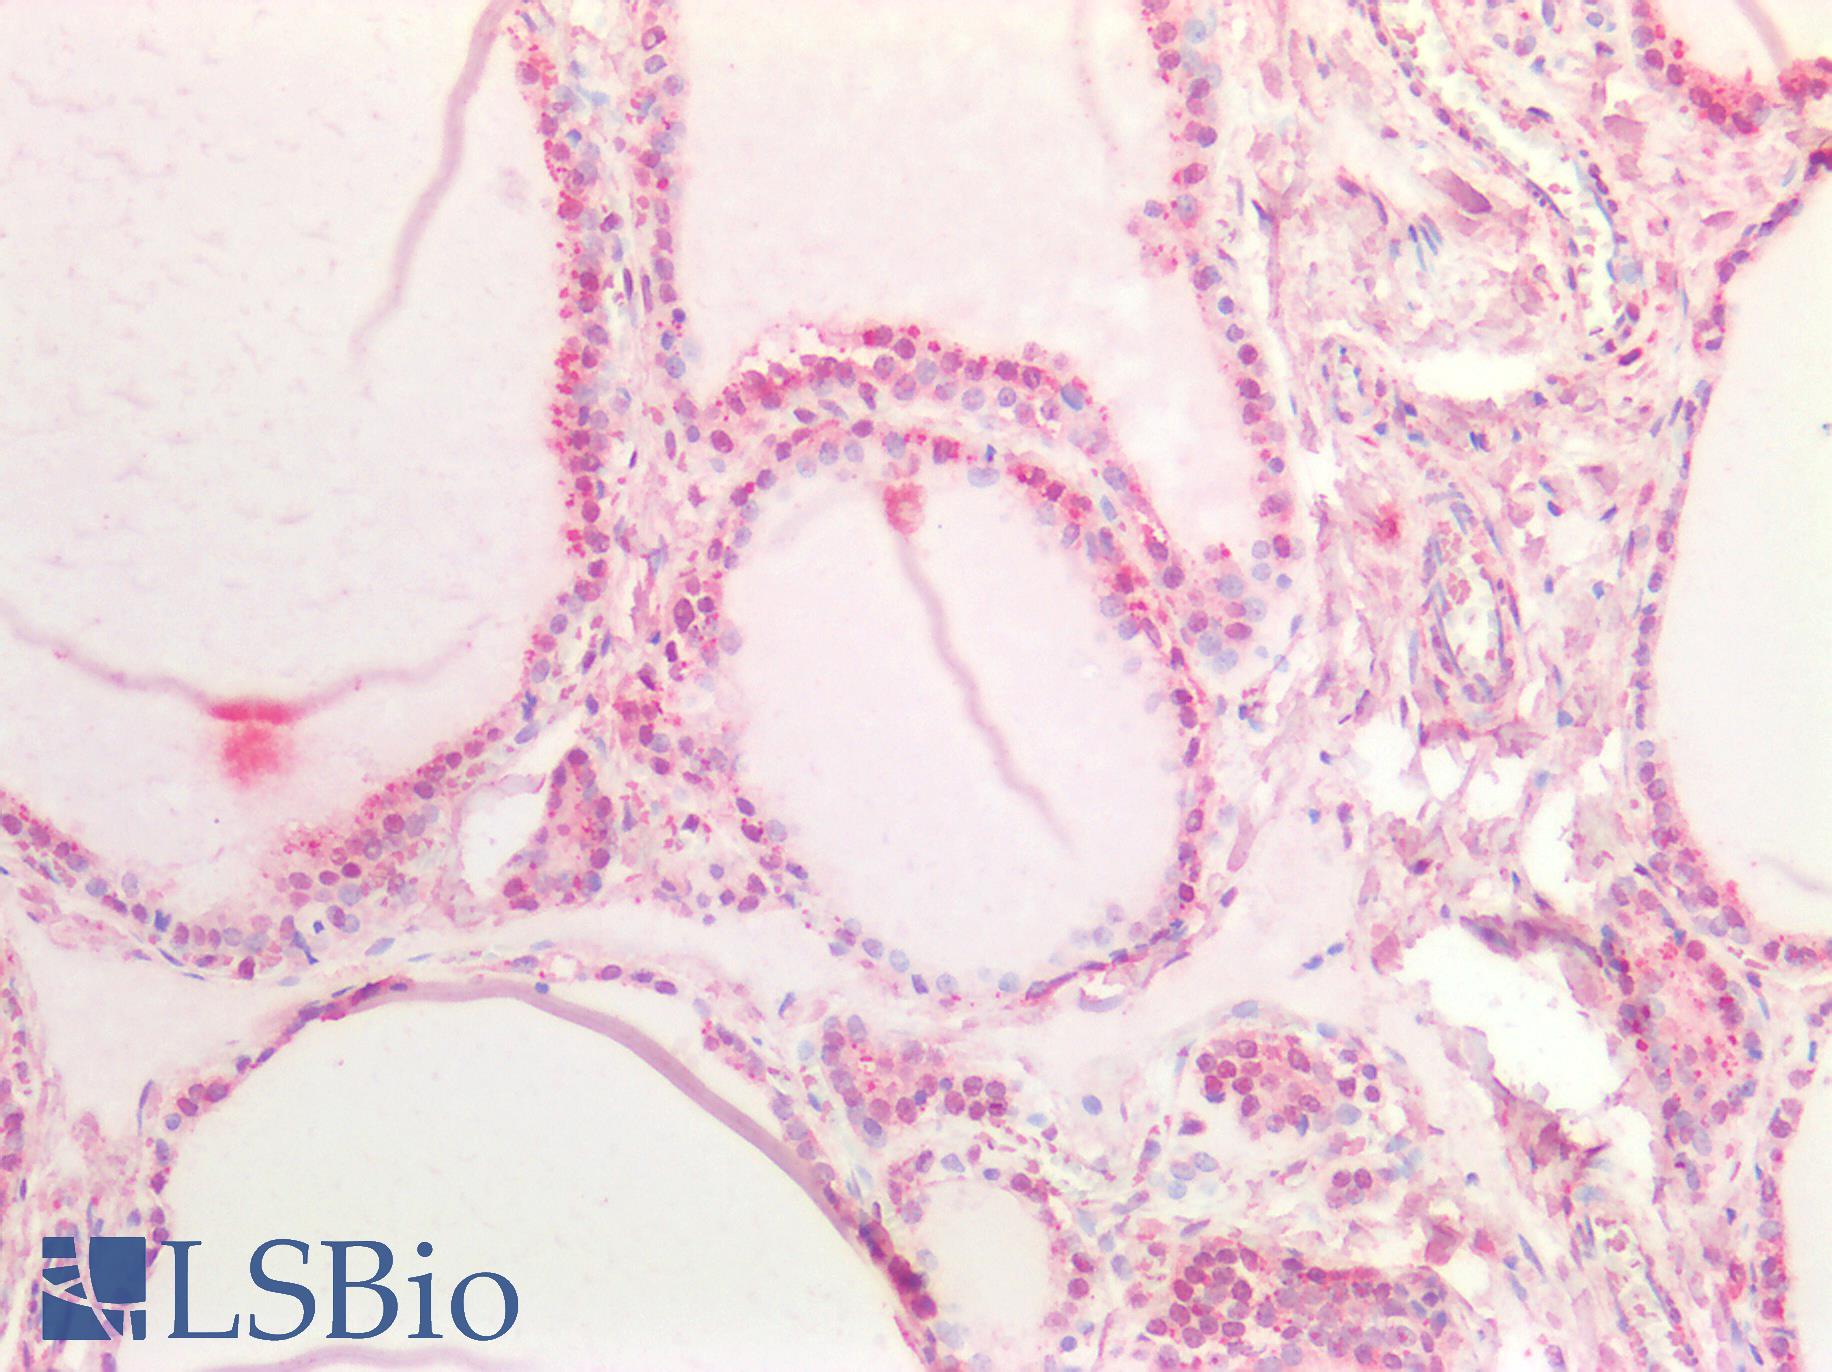 NOTCH1 Antibody - Human Thyroid: Formalin-Fixed, Paraffin-Embedded (FFPE)